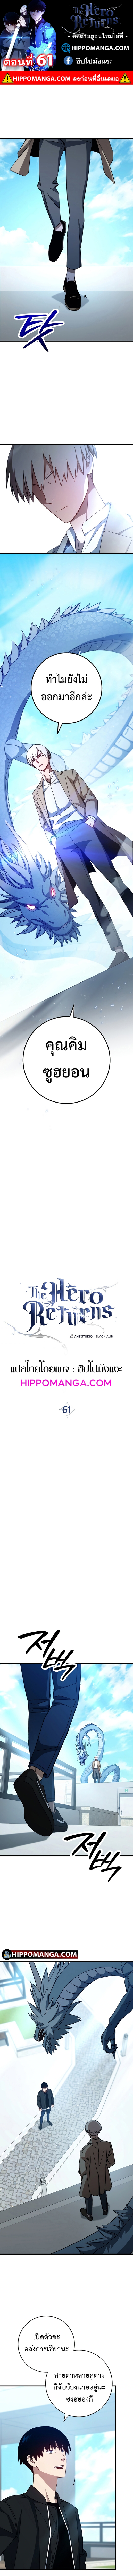 The Hero Returns 61 (1)